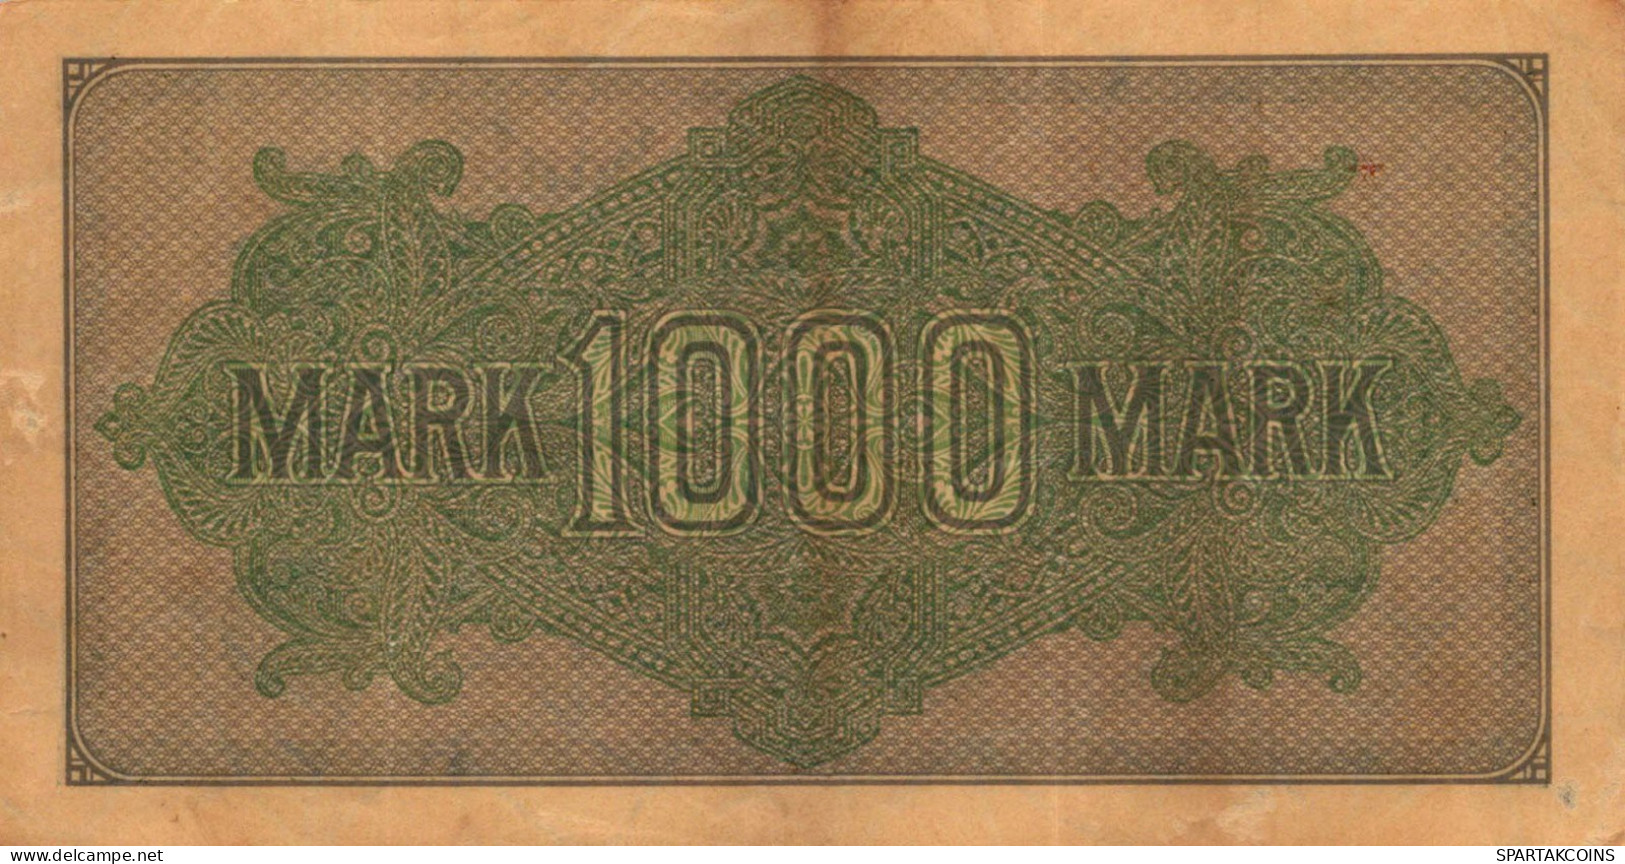 1000 MARK 1922 Stadt BERLIN DEUTSCHLAND Papiergeld Banknote #PL461 - Lokale Ausgaben